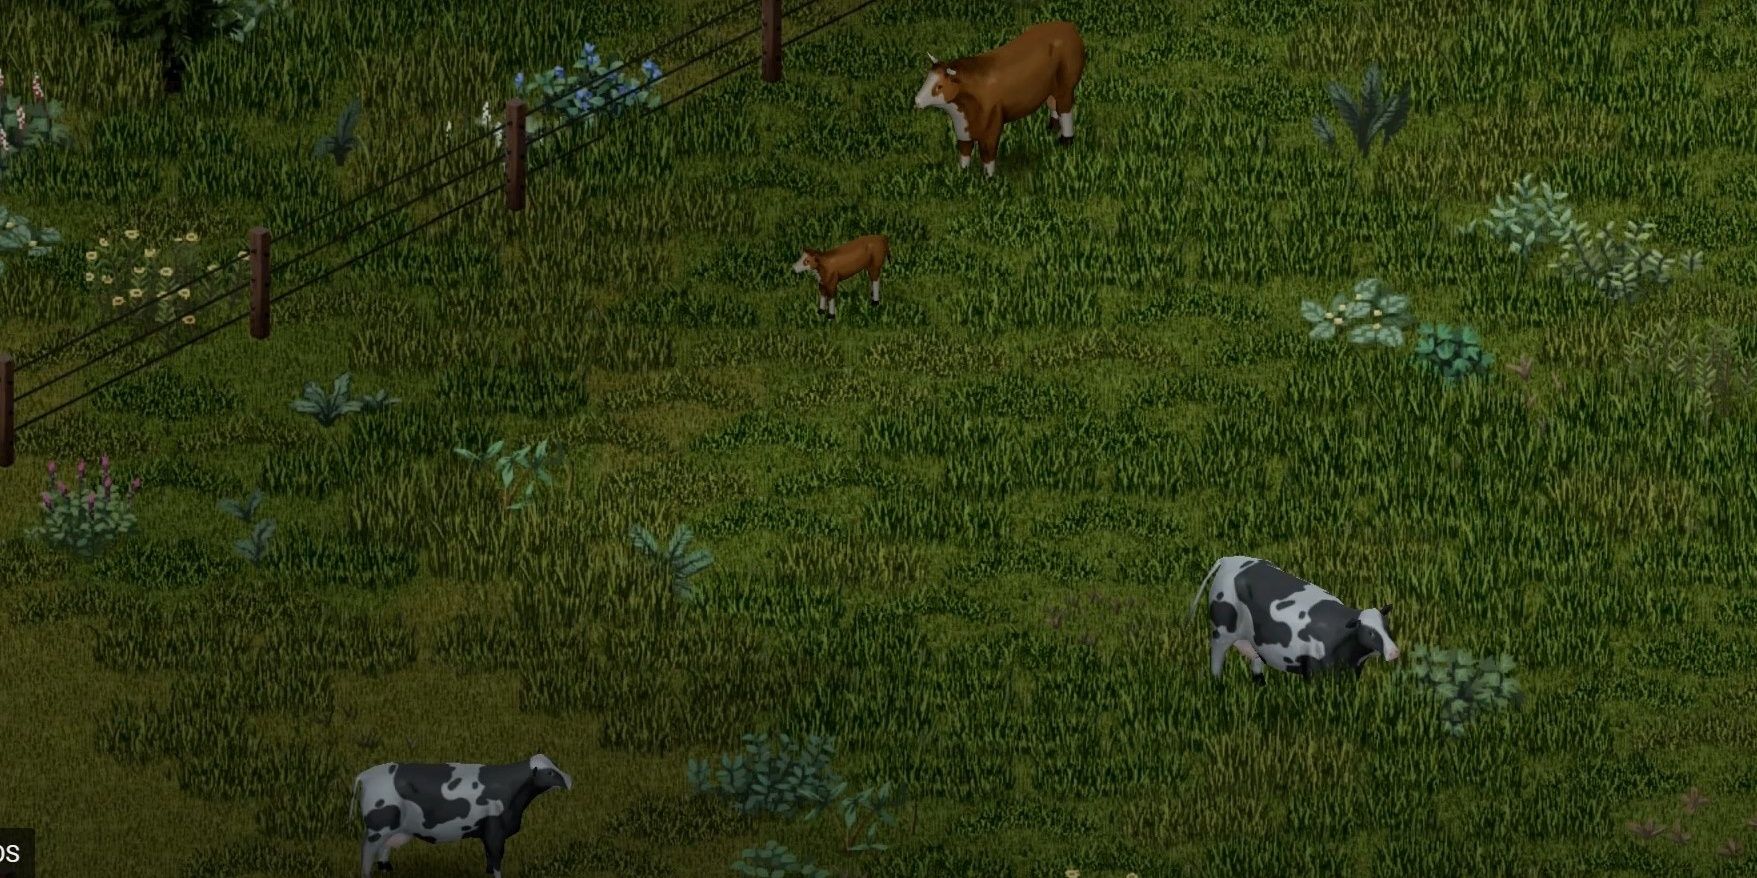 wilderness grass cows